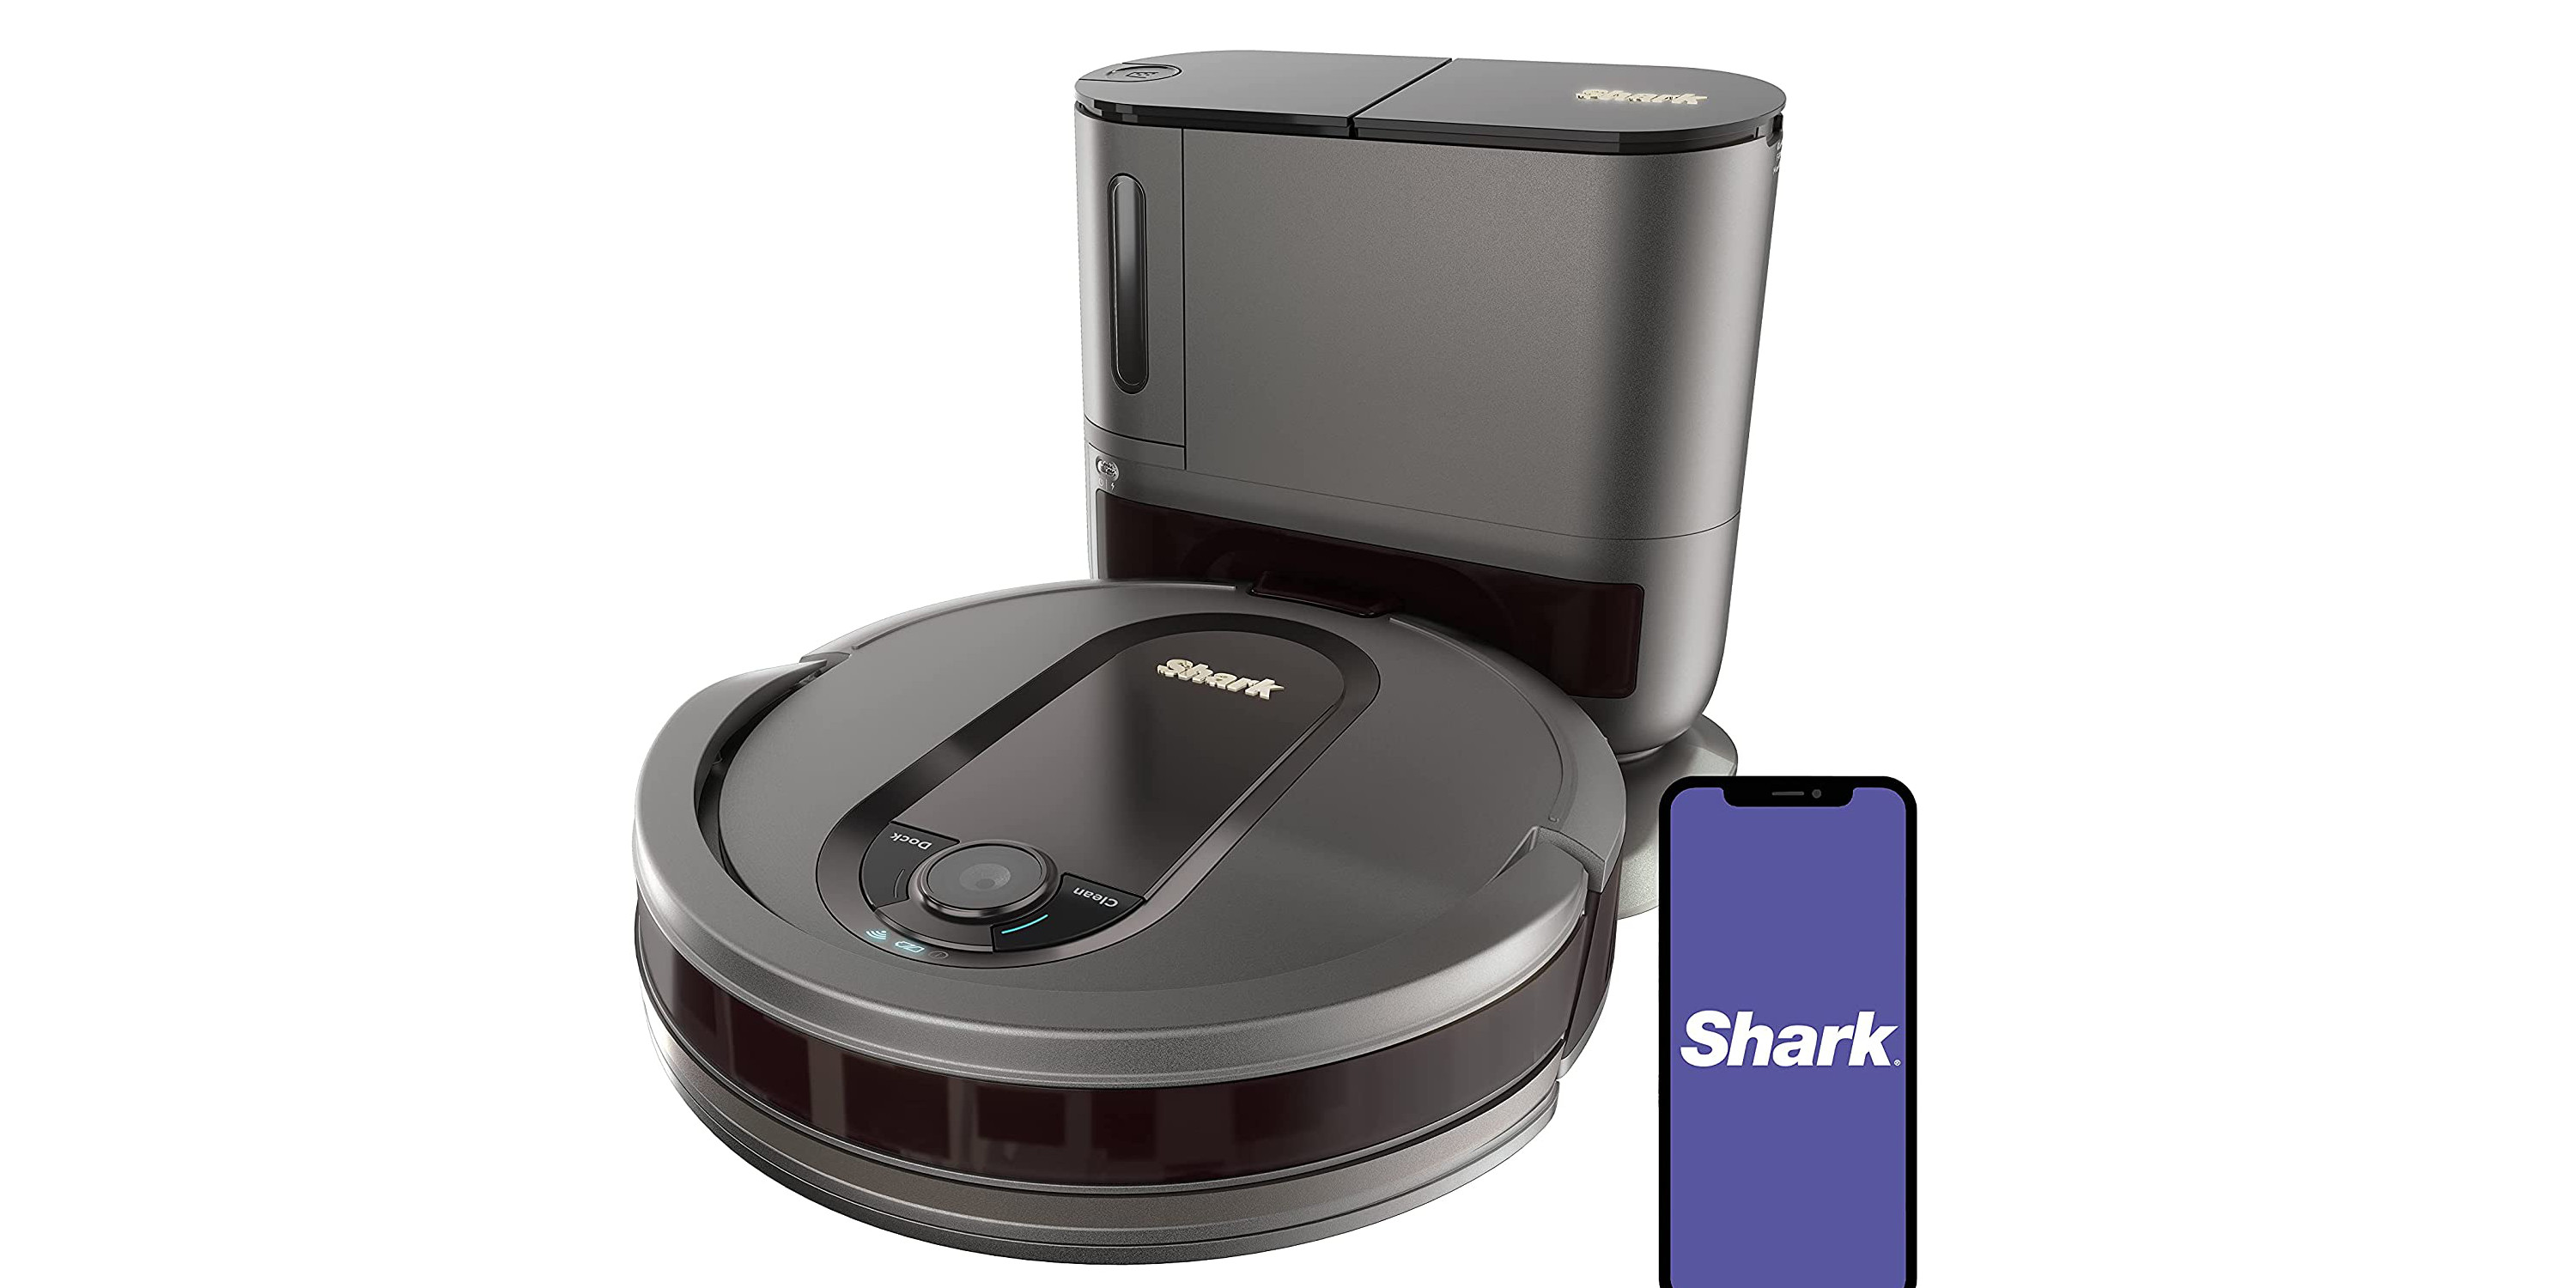 Shark's $500 AV911S EX Robot Vacuum base to $300